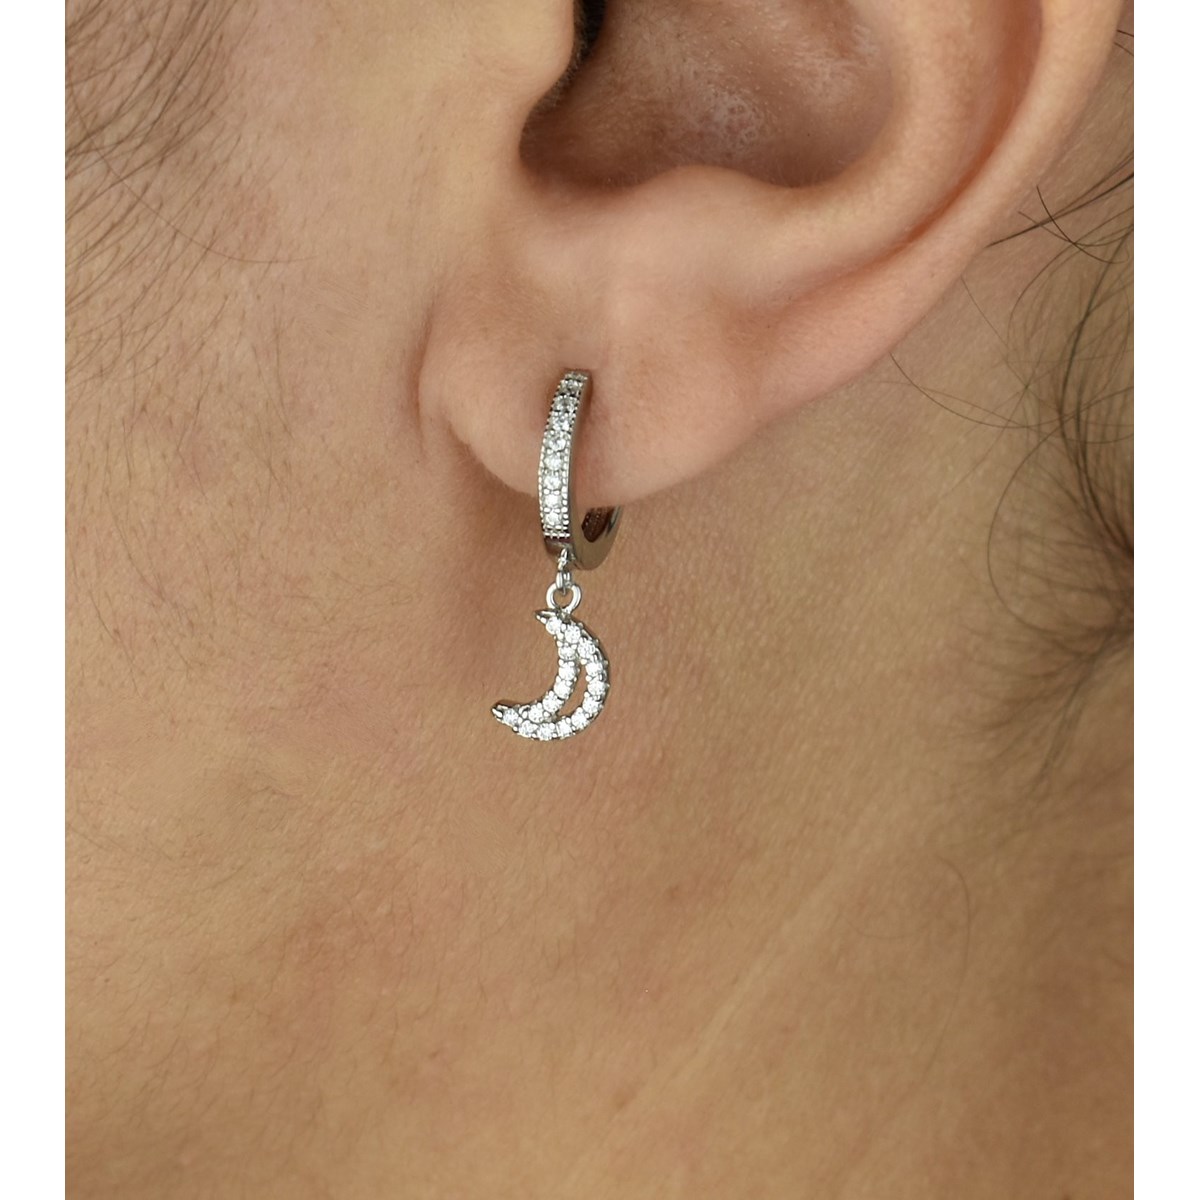 Boucles d'oreilles Mini Créoles lune oxyde de zirconium pendante Argent 925 Rhodié - vue 3